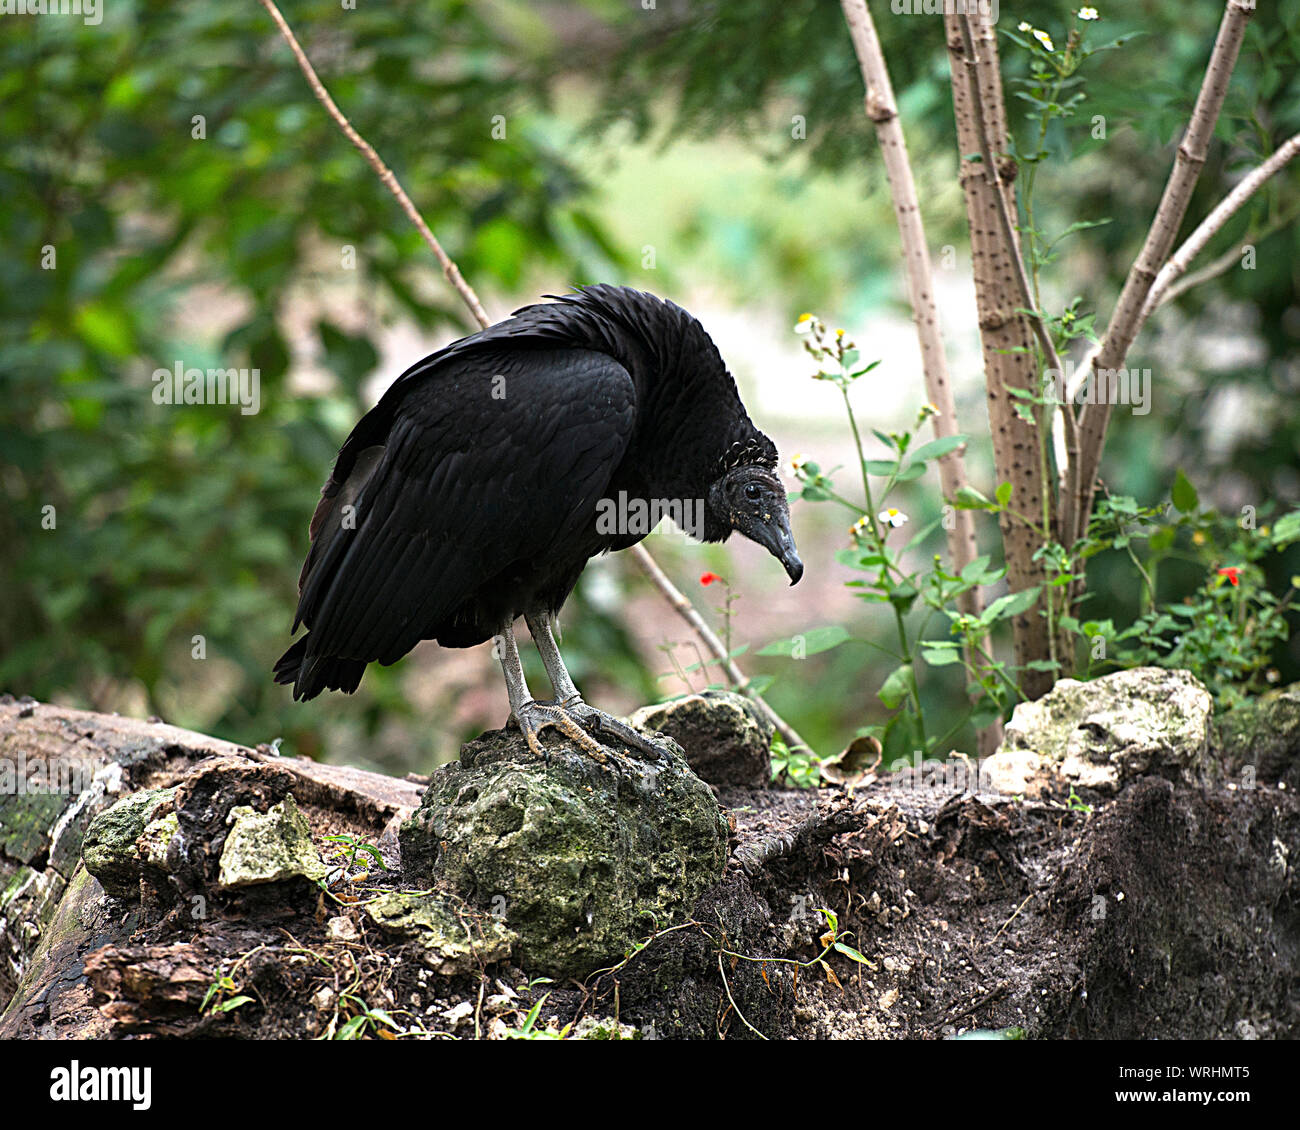 Schwarze Geier Vogel in der Nähe Profil ansehen mit einem Bokeh Hintergrund mit schwarzen Federn, Schnabel, Auge, grauer Kopf in seine Umwelt und Umgebung. Stockfoto